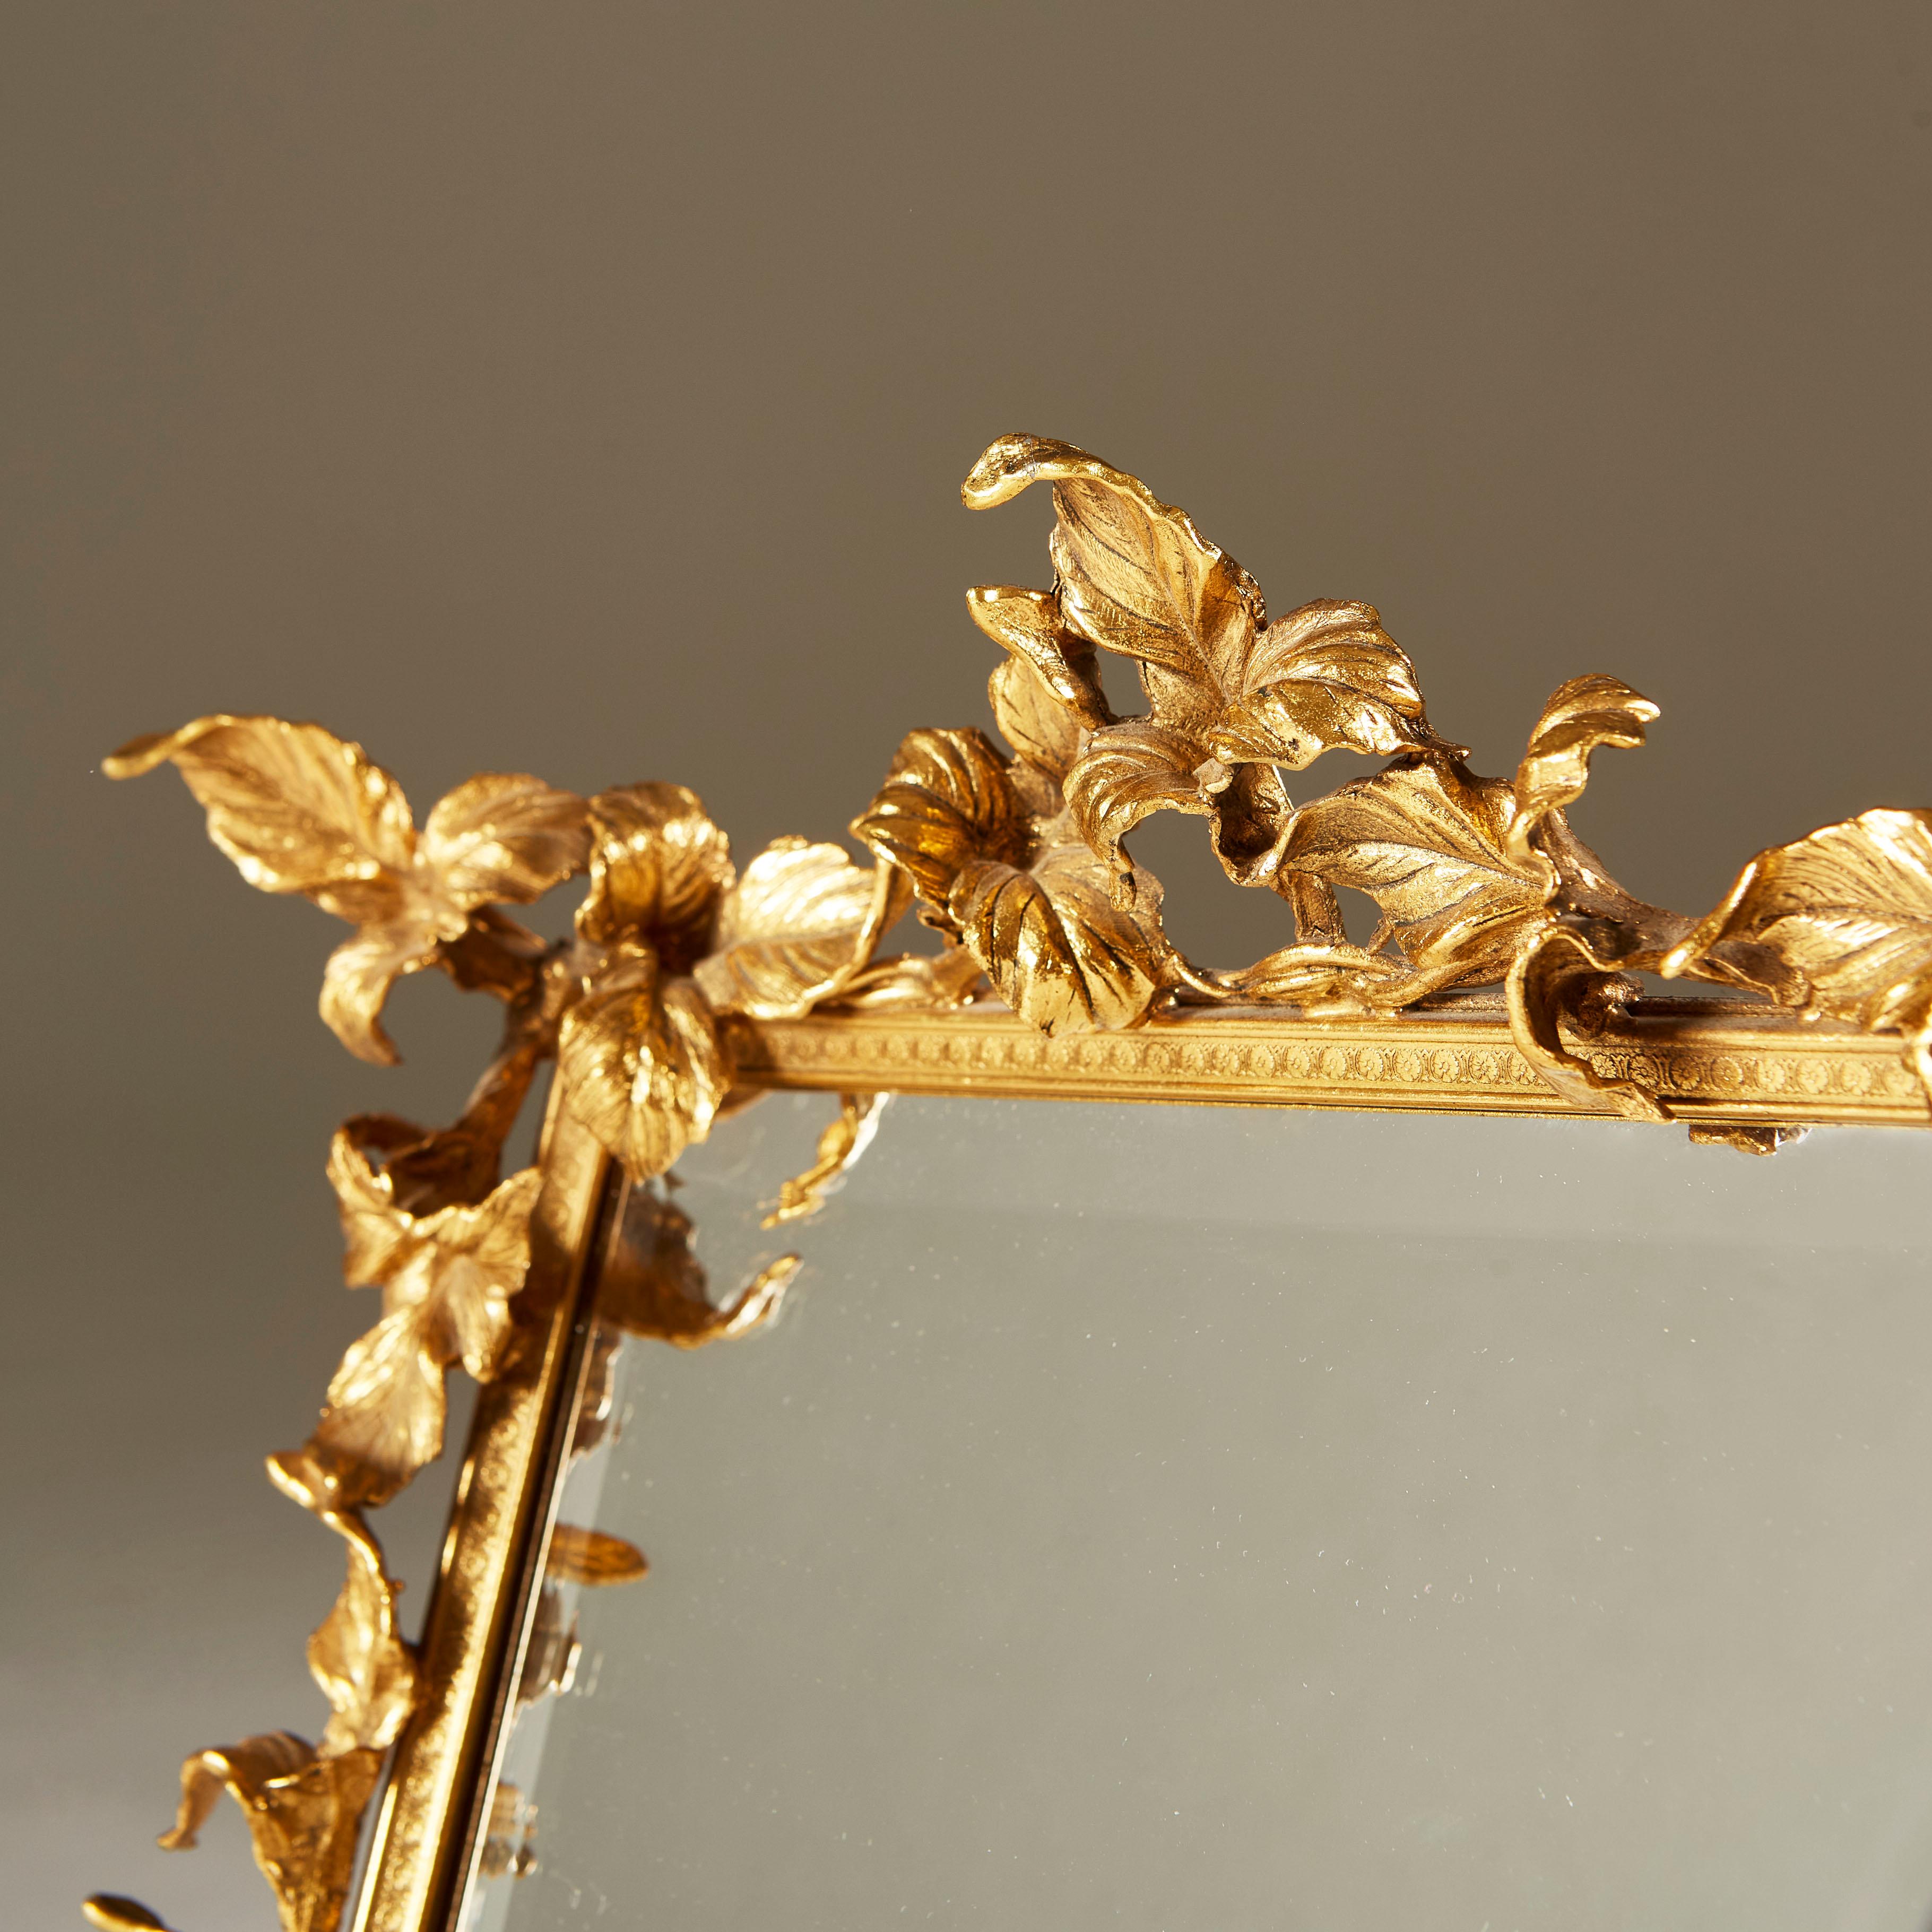 Dekorativer goldfarbener Schminktischspiegel mit kreuzförmig gemustertem Rahmen und aufwändiger Blattverzierung. Sitzt auf Kugelfüßen. Samtrücken und Rückenstrebe. Spiegel mit abgeschrägter Kante.

